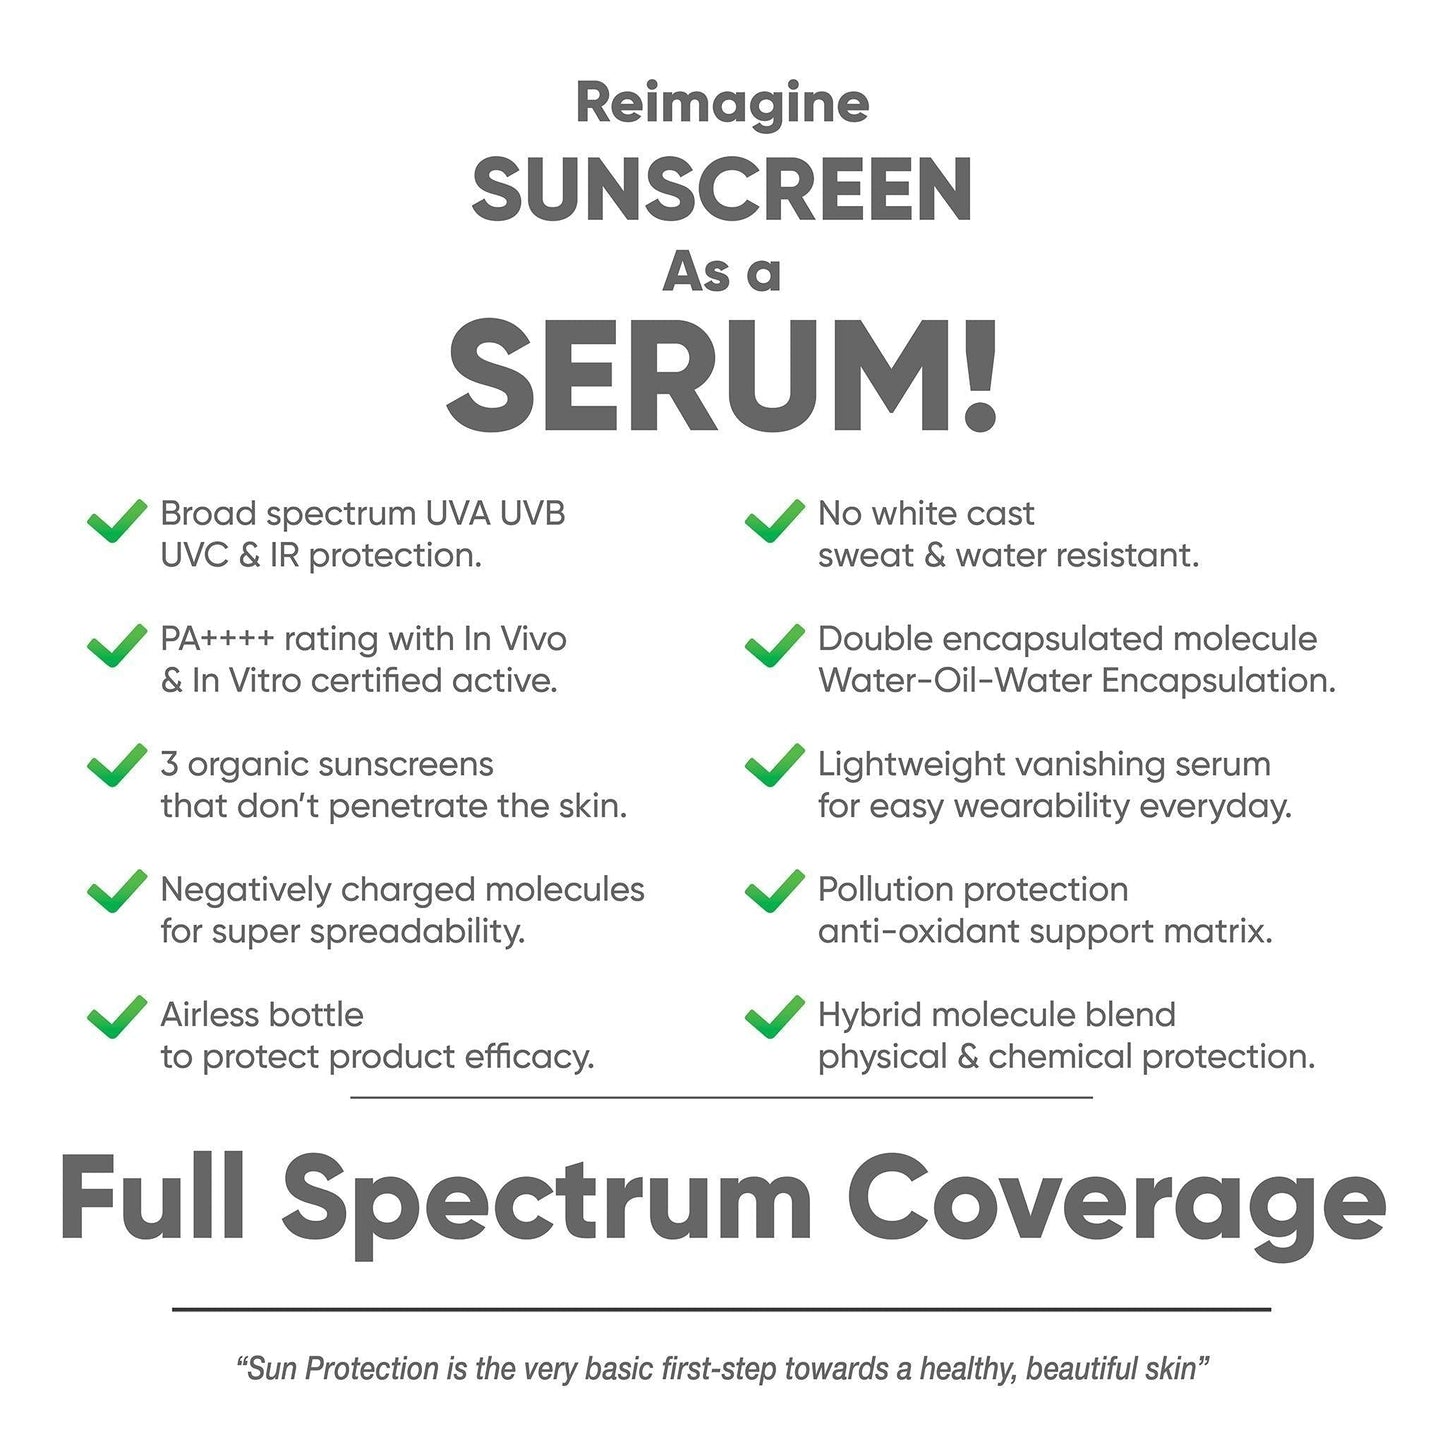 SPF 50 Sunscreen Serum, 30ml